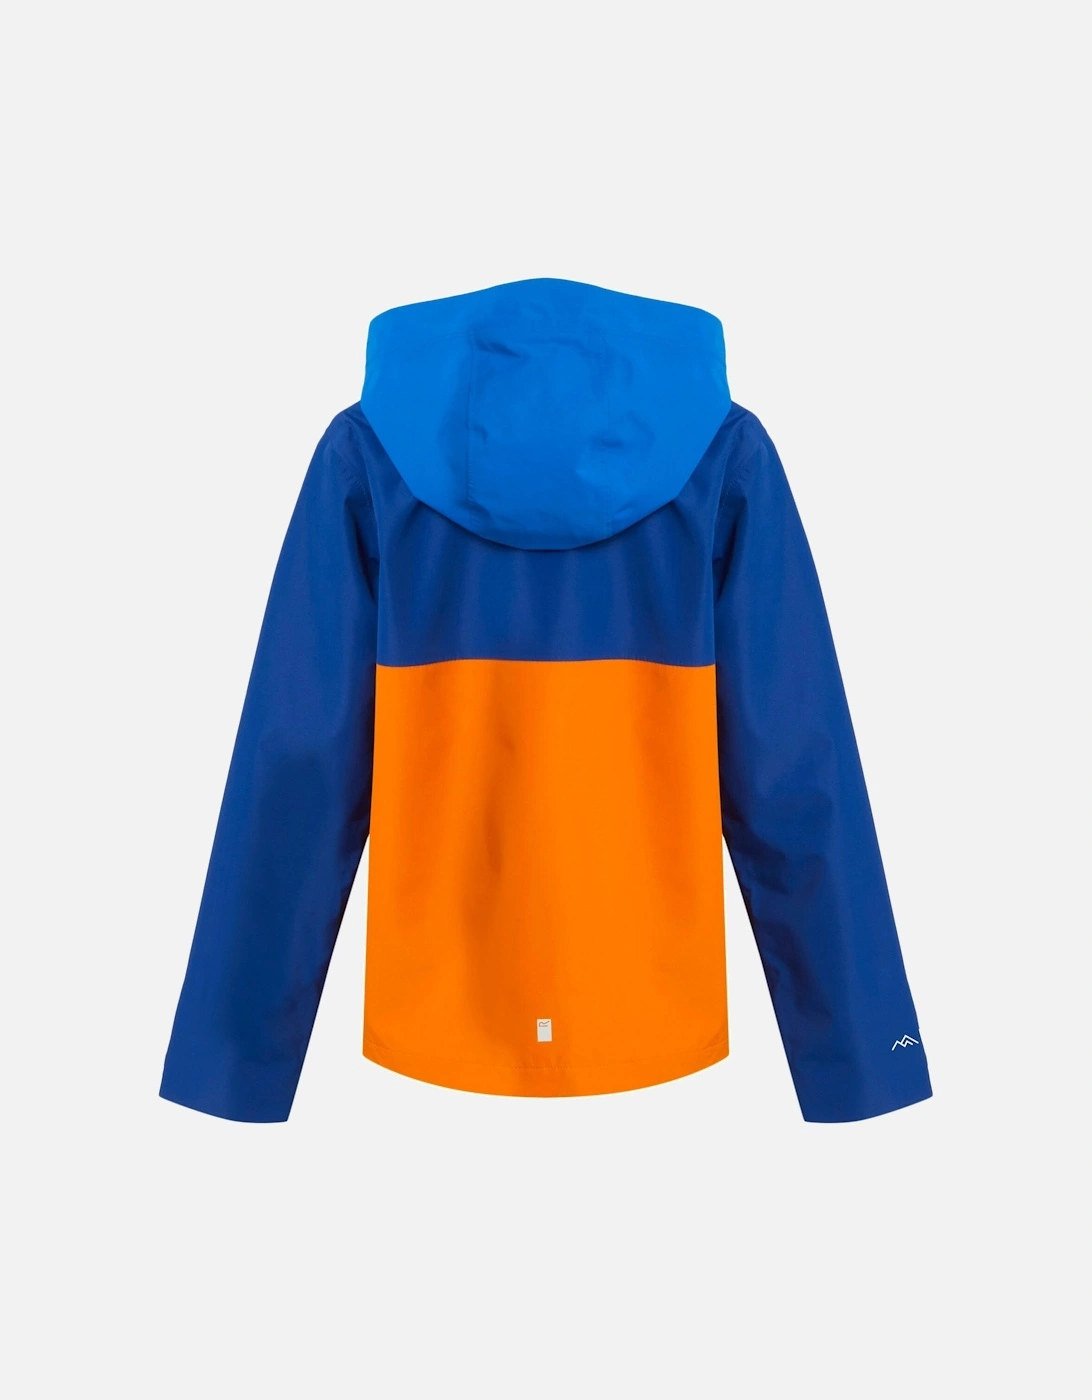 Childrens/Kids Hanleigh Waterproof Jacket